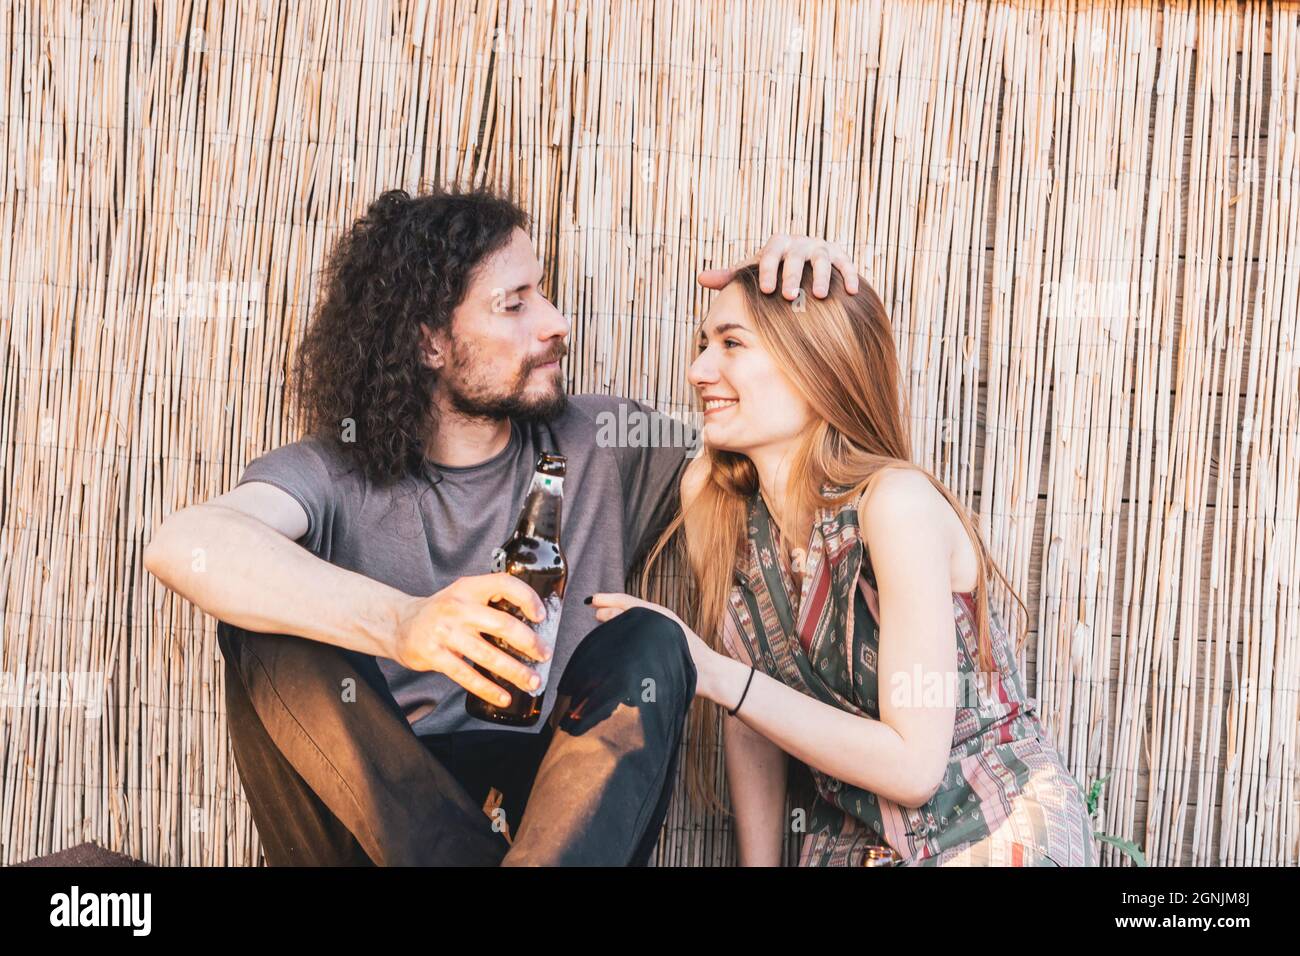 Un jeune couple de hippsters assis sur le sol dans un bar avec une lumière de l'après-midi tout en buvant de la bière. Concept d'amour et d'affection Banque D'Images